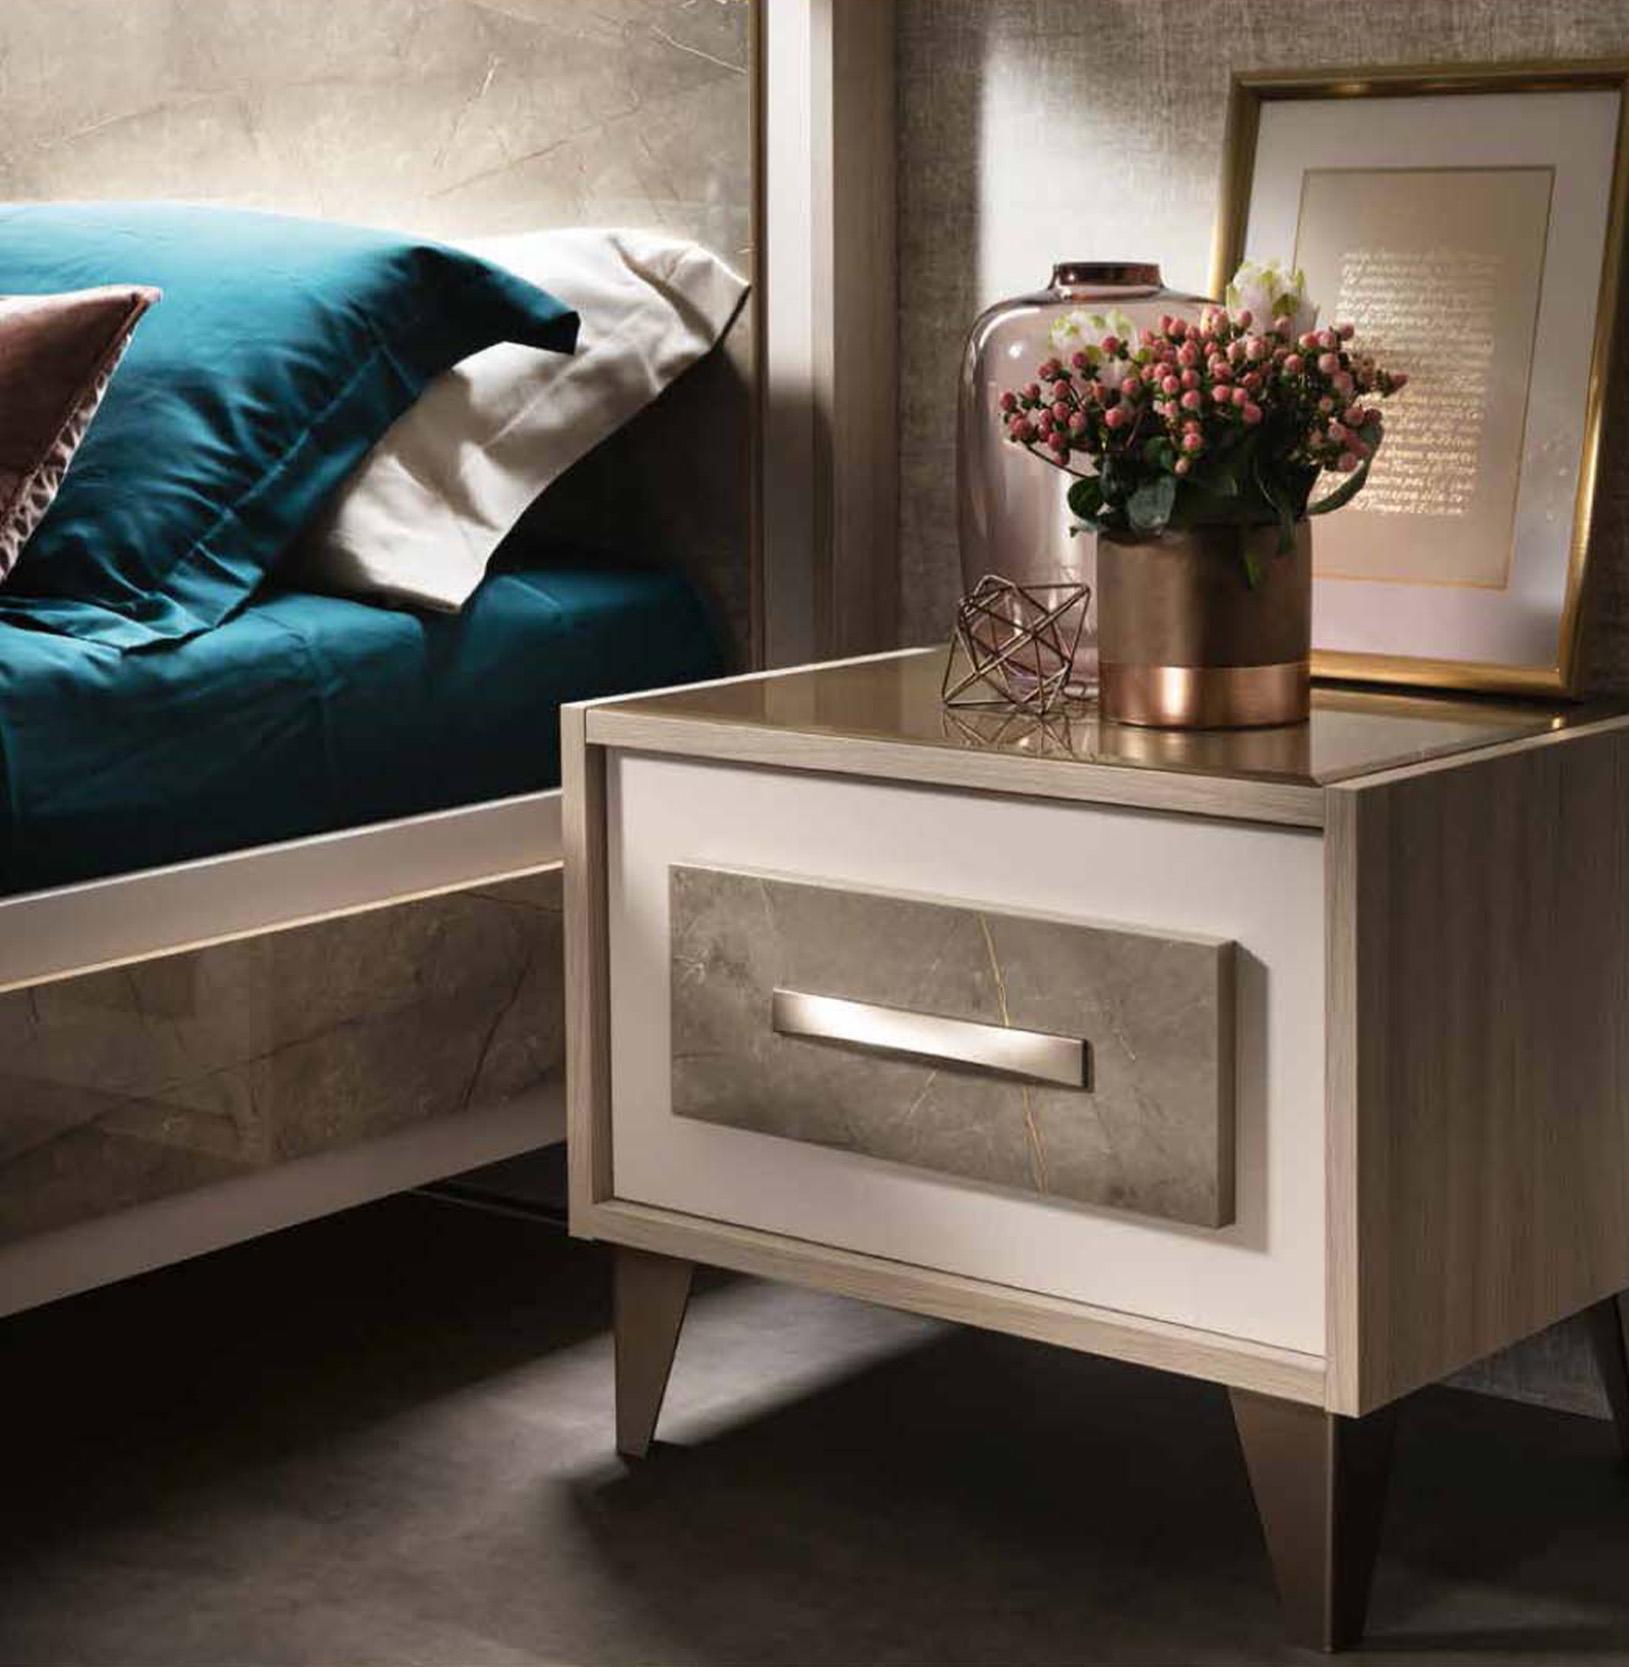 

    
Shiny Gray Marble-finish Top King Bedroom Set 3 ARREDOAMBRA ESF Made in Italy
